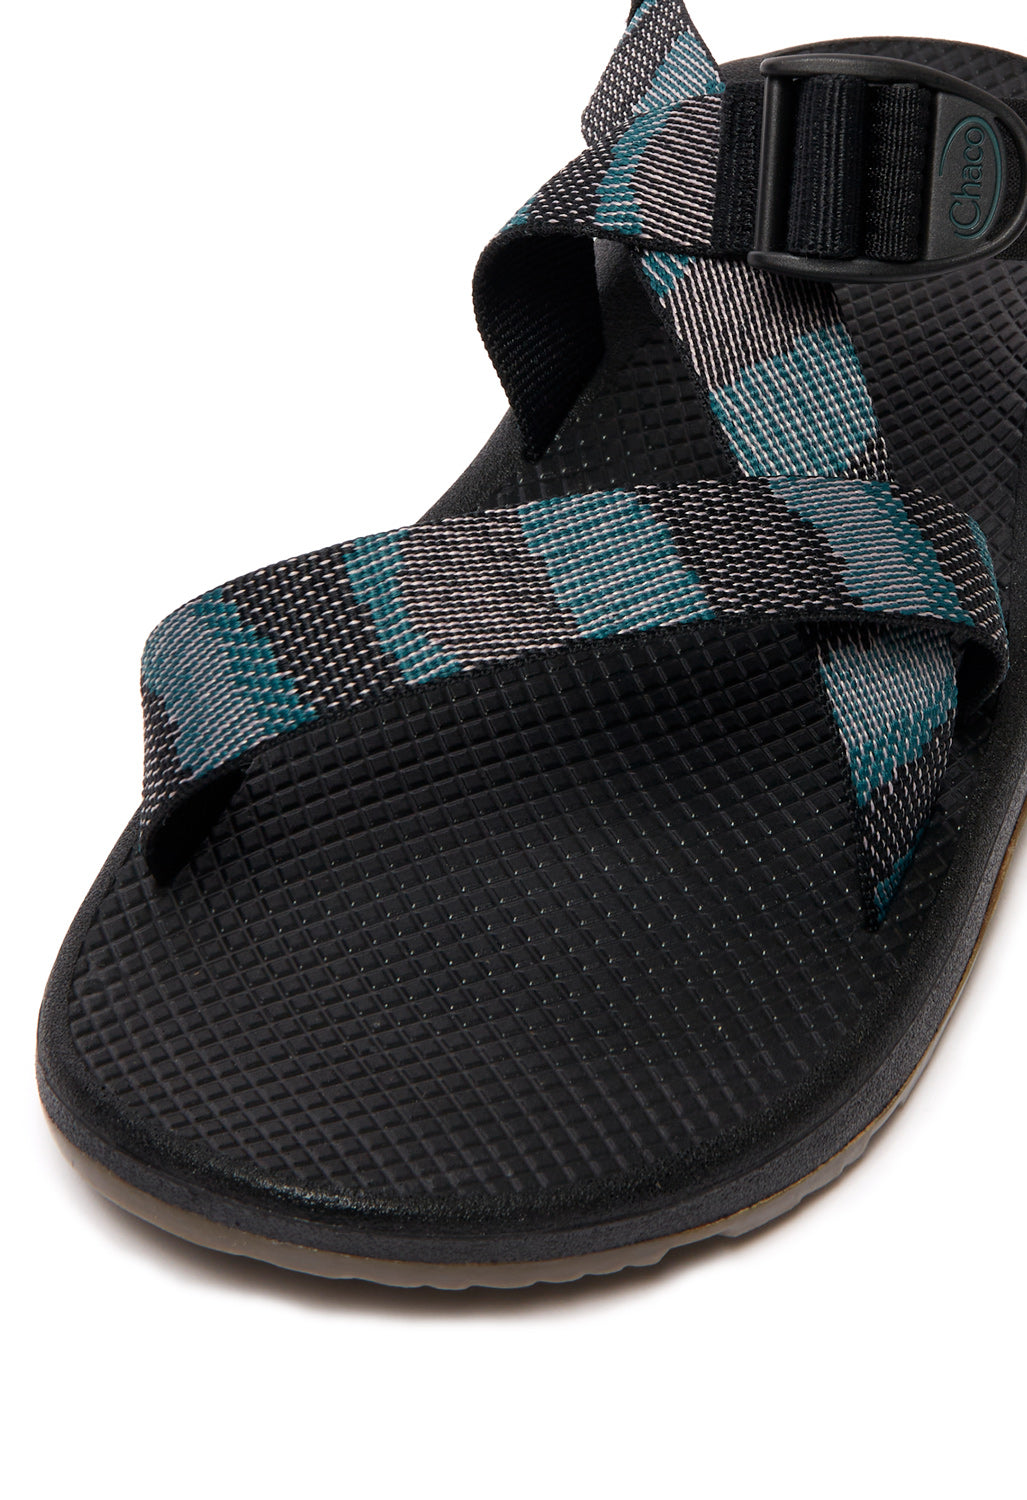 Chaco Men's Z Cloud Sandals - Weave Black